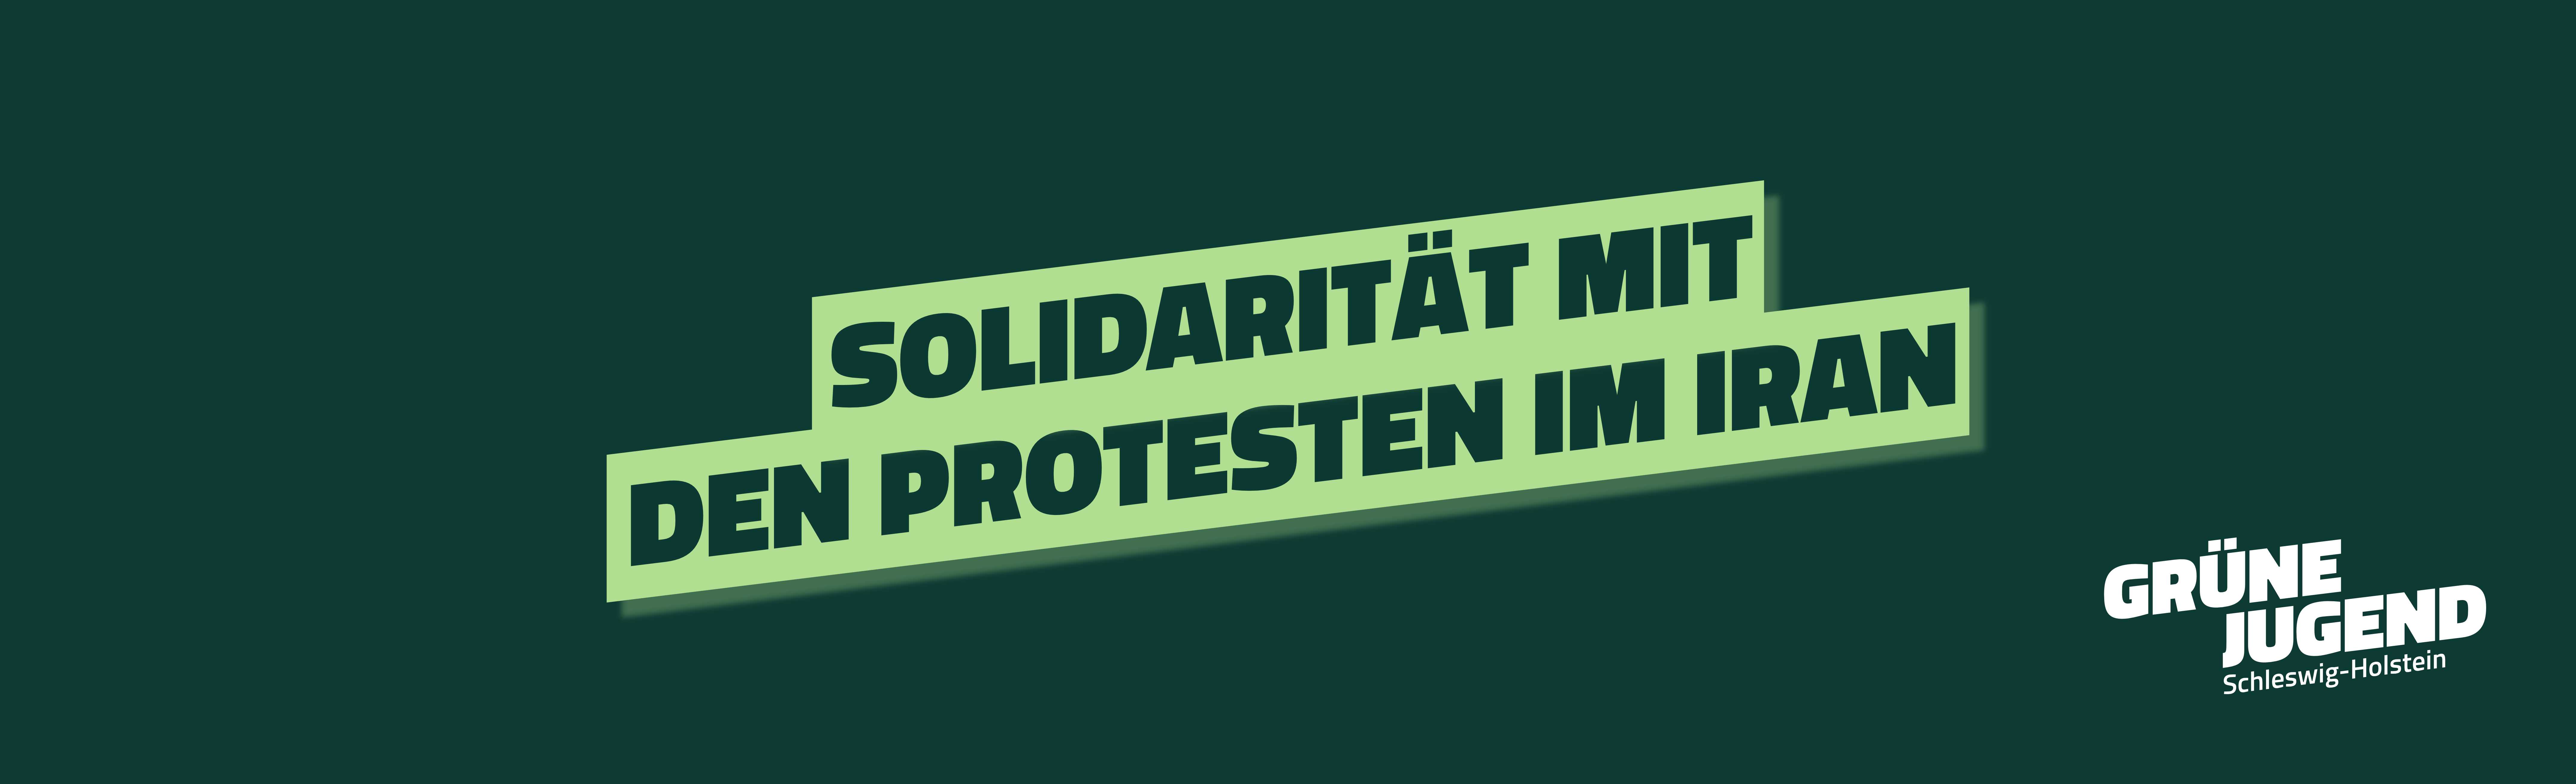 Solidarität mit den Protesten im Iran